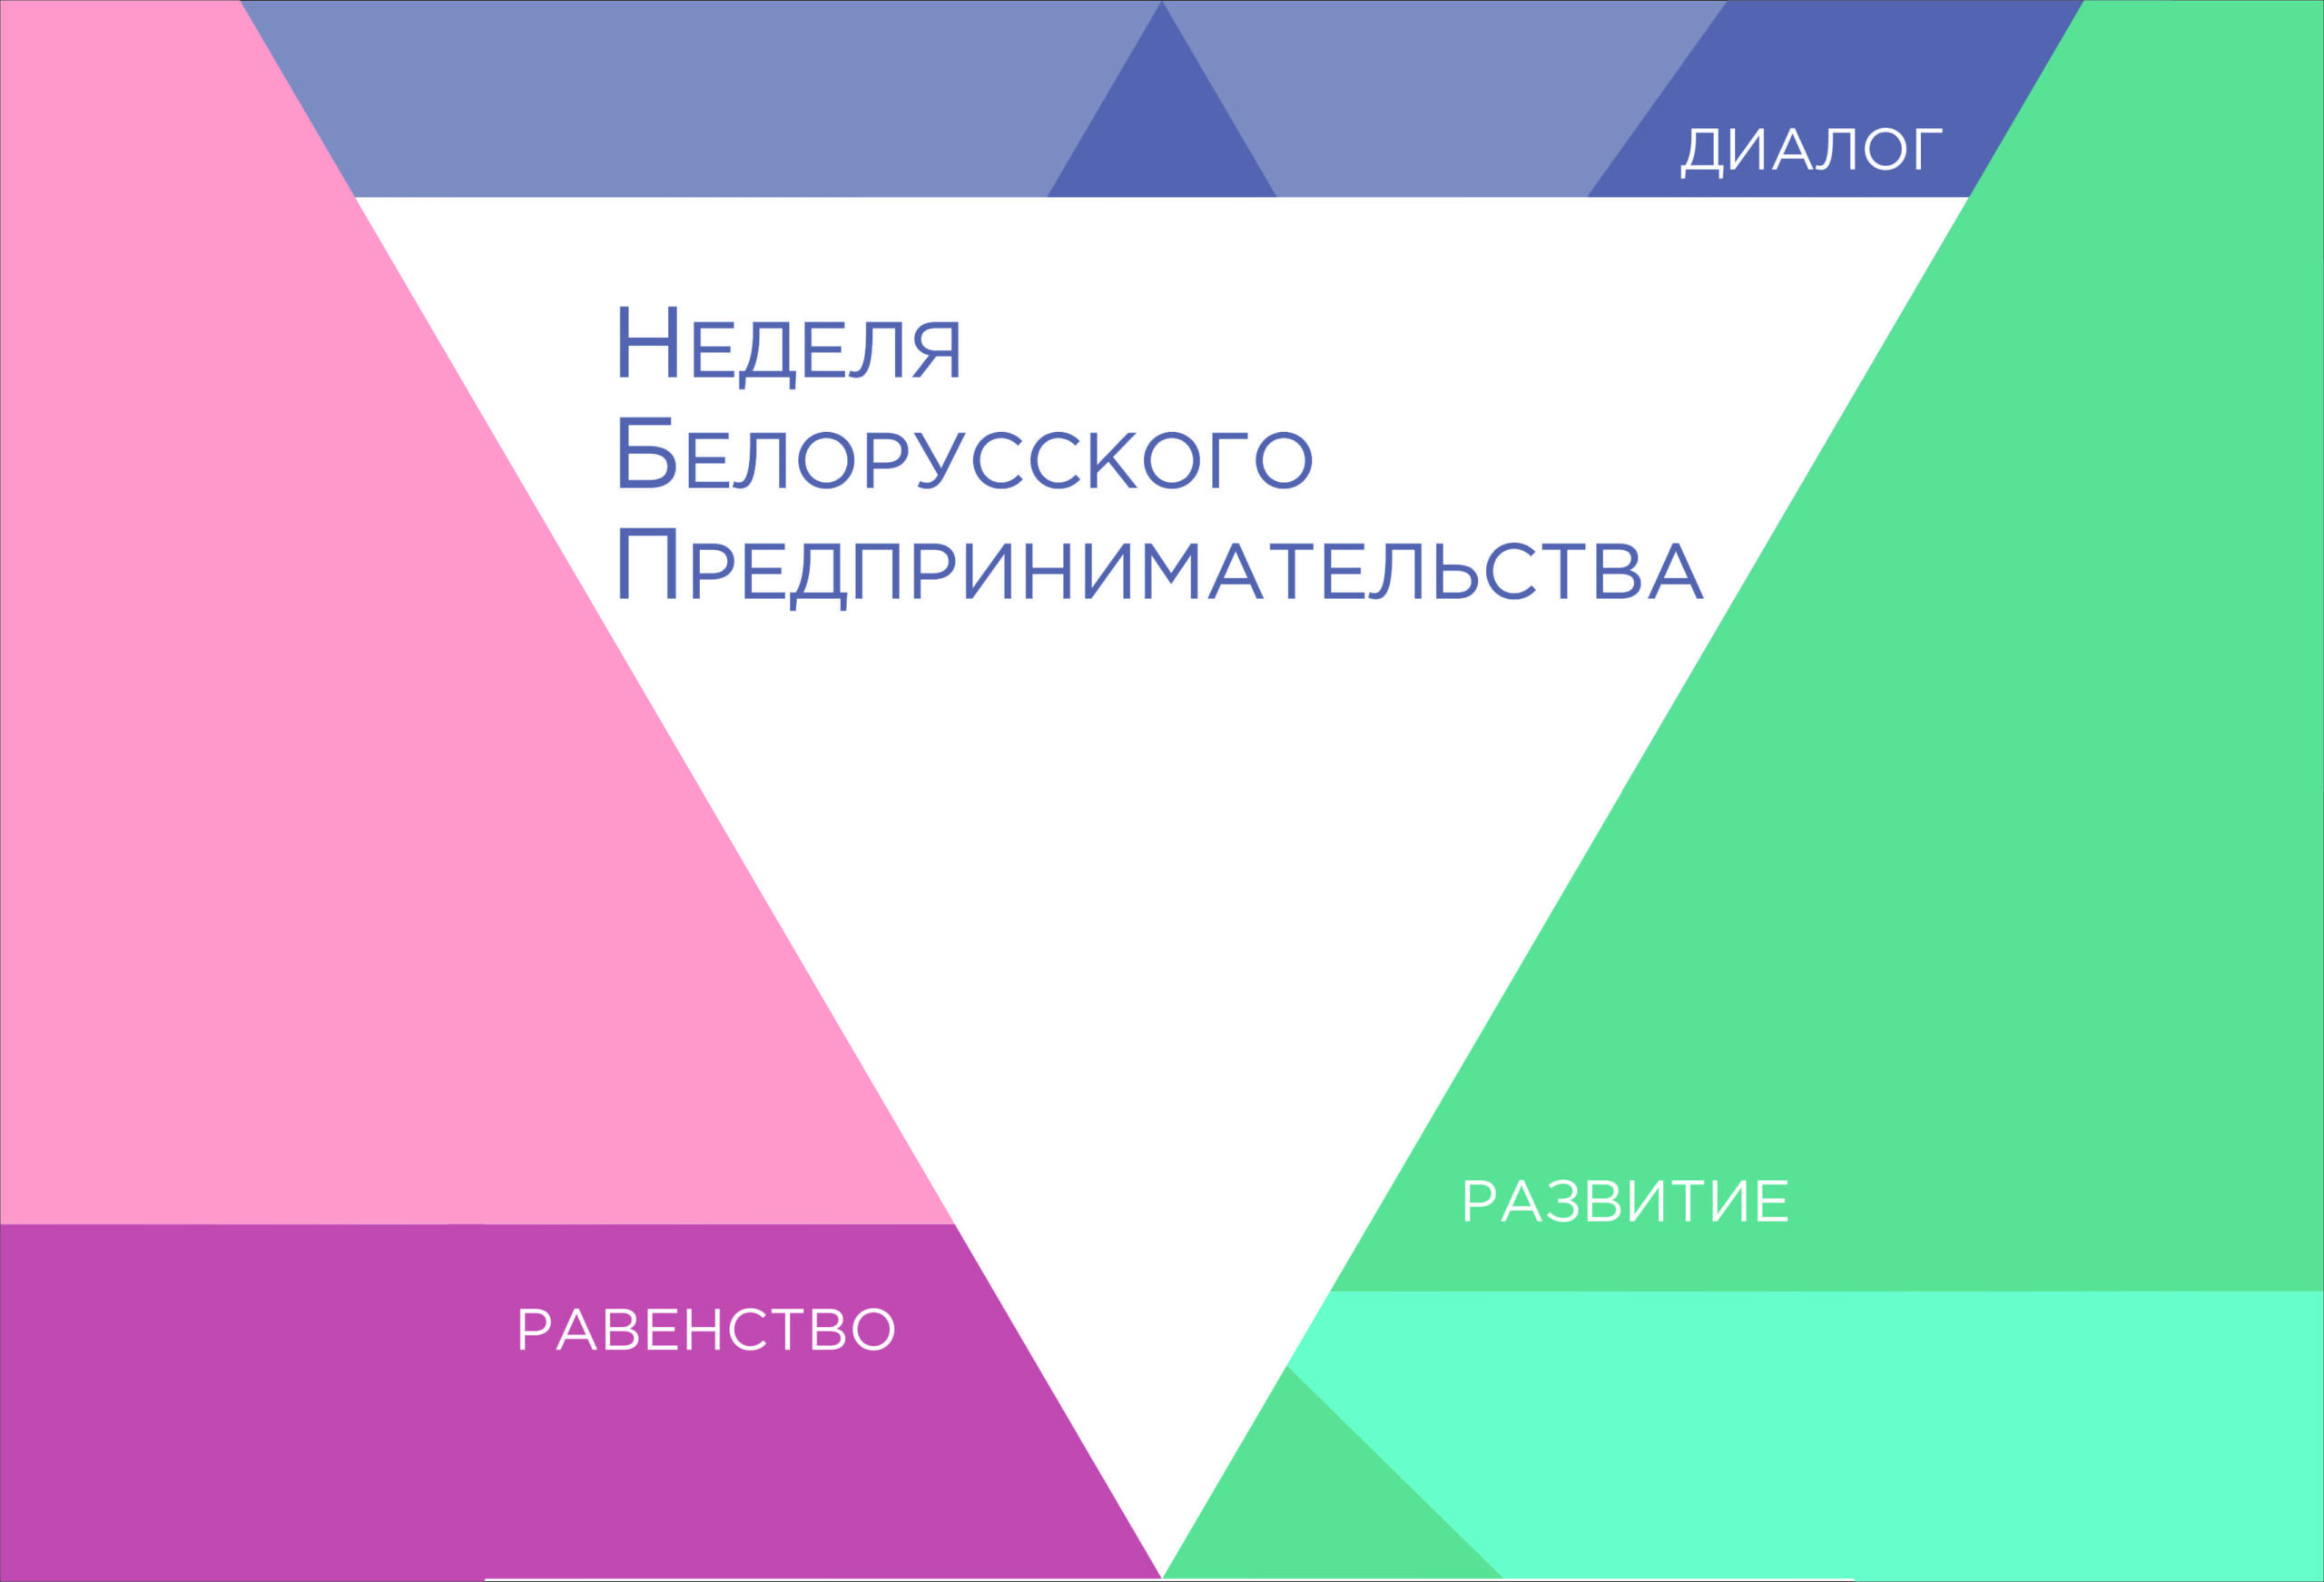 VII Неделя белорусского предпринимательства с 21.03 по 27.03.2022 года